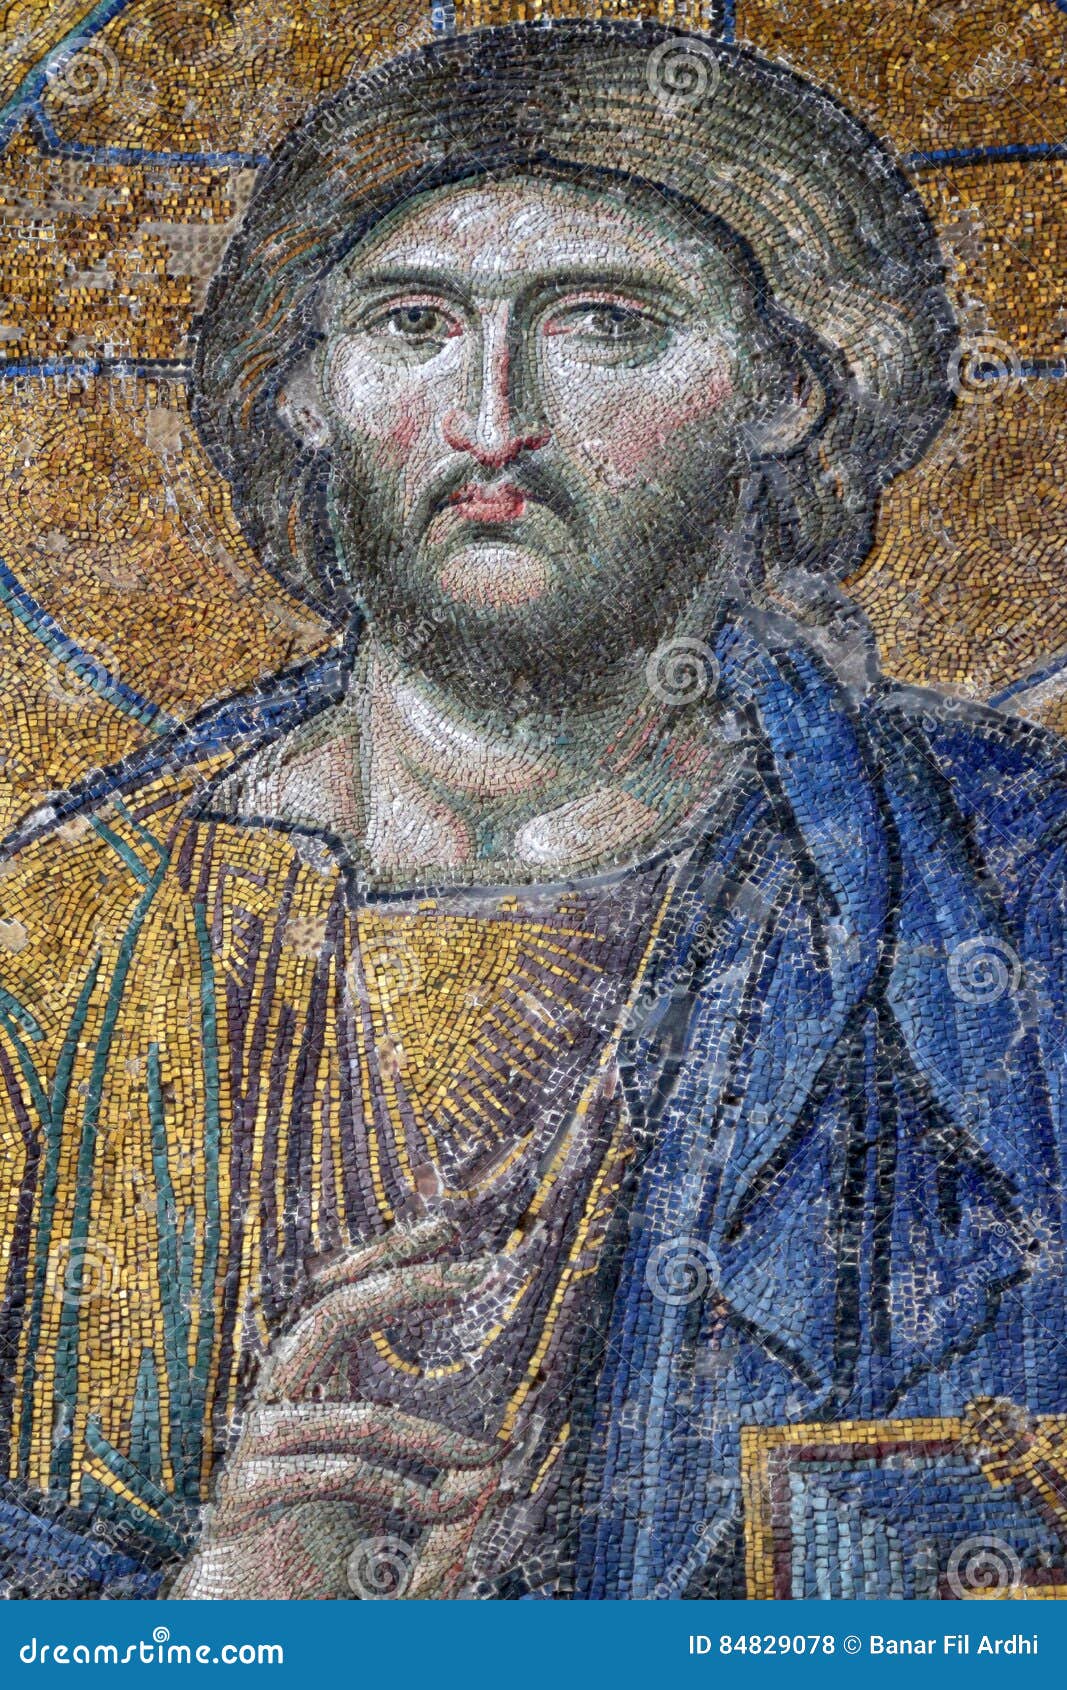 El Jesús real y el Jesús ficticio: su fisonomía - Página 6 Mosaico-bizantino-de-jesus-christ-en-hagia-sophia-84829078